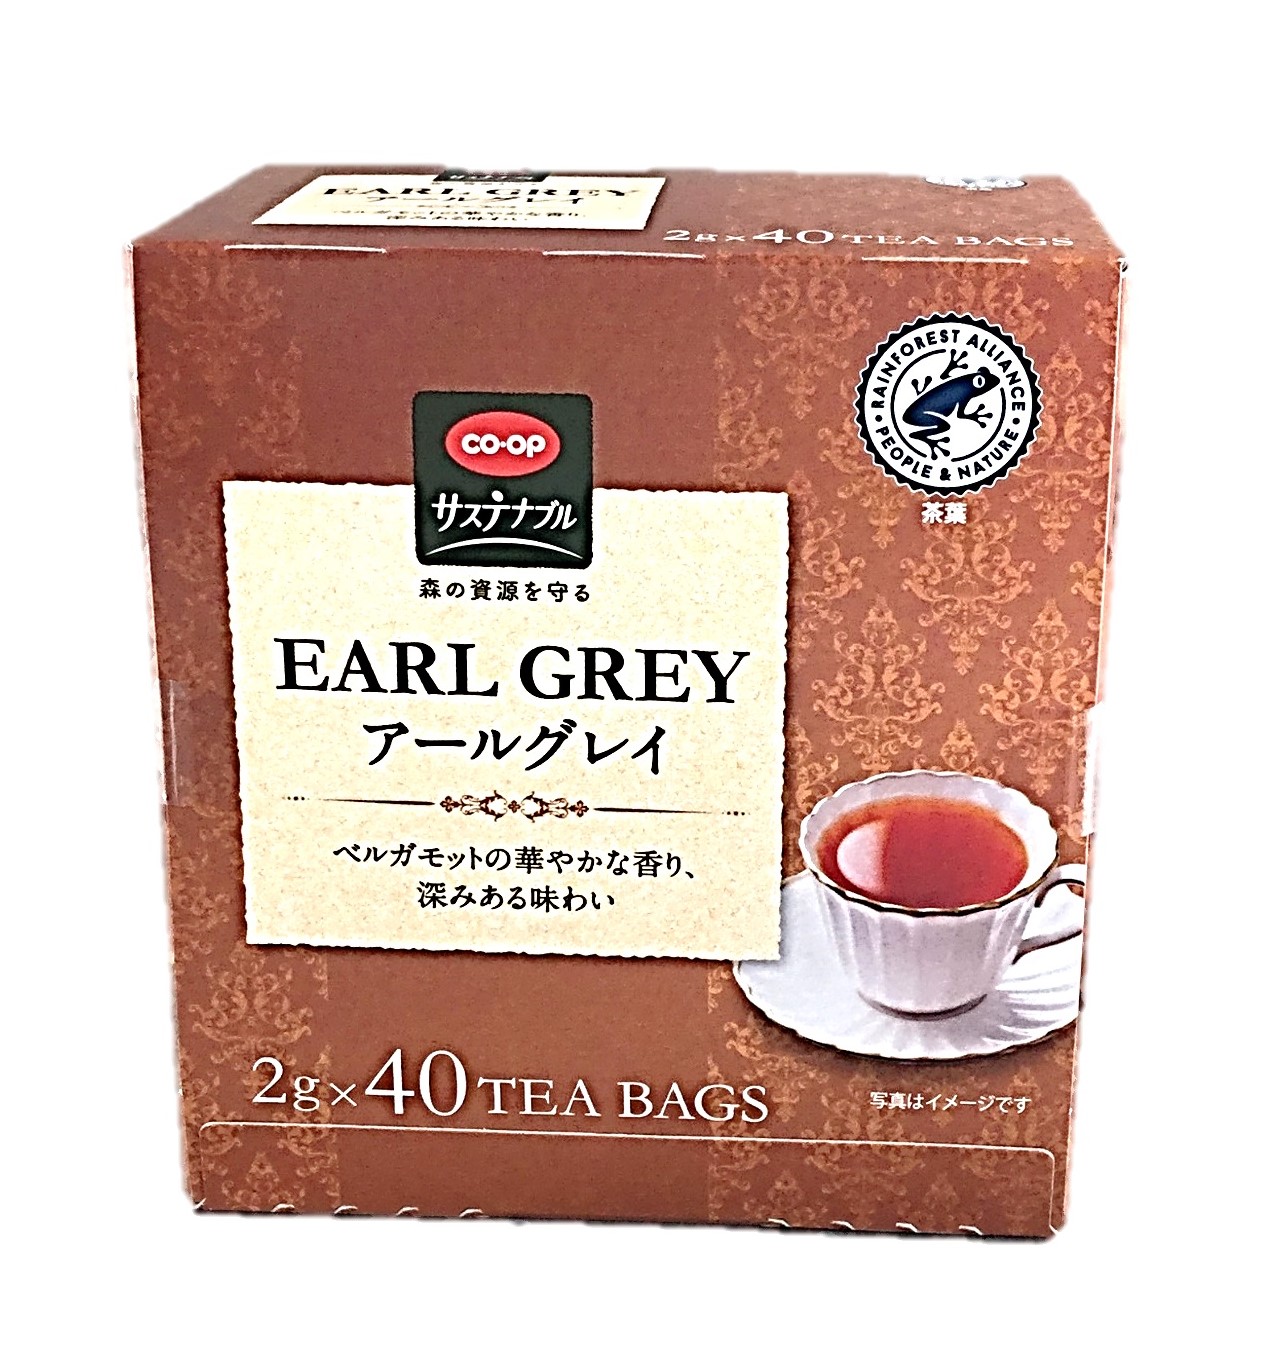 紅茶ティーバッグ アールグレイ2g×40